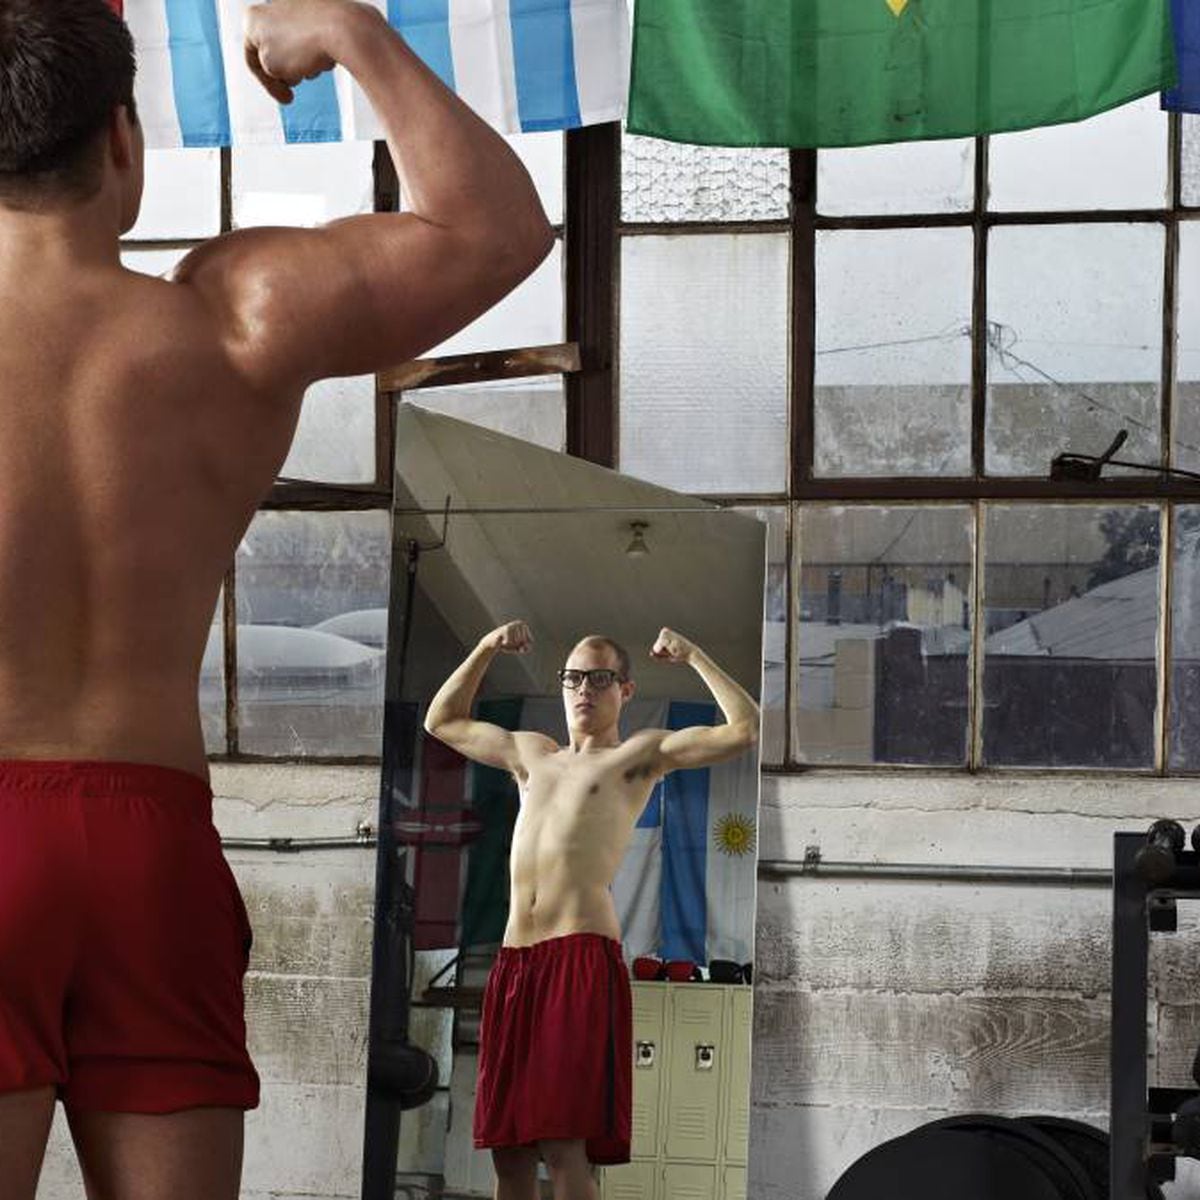 Por qué puede ser positivo quitar los espejos de los gimnasios